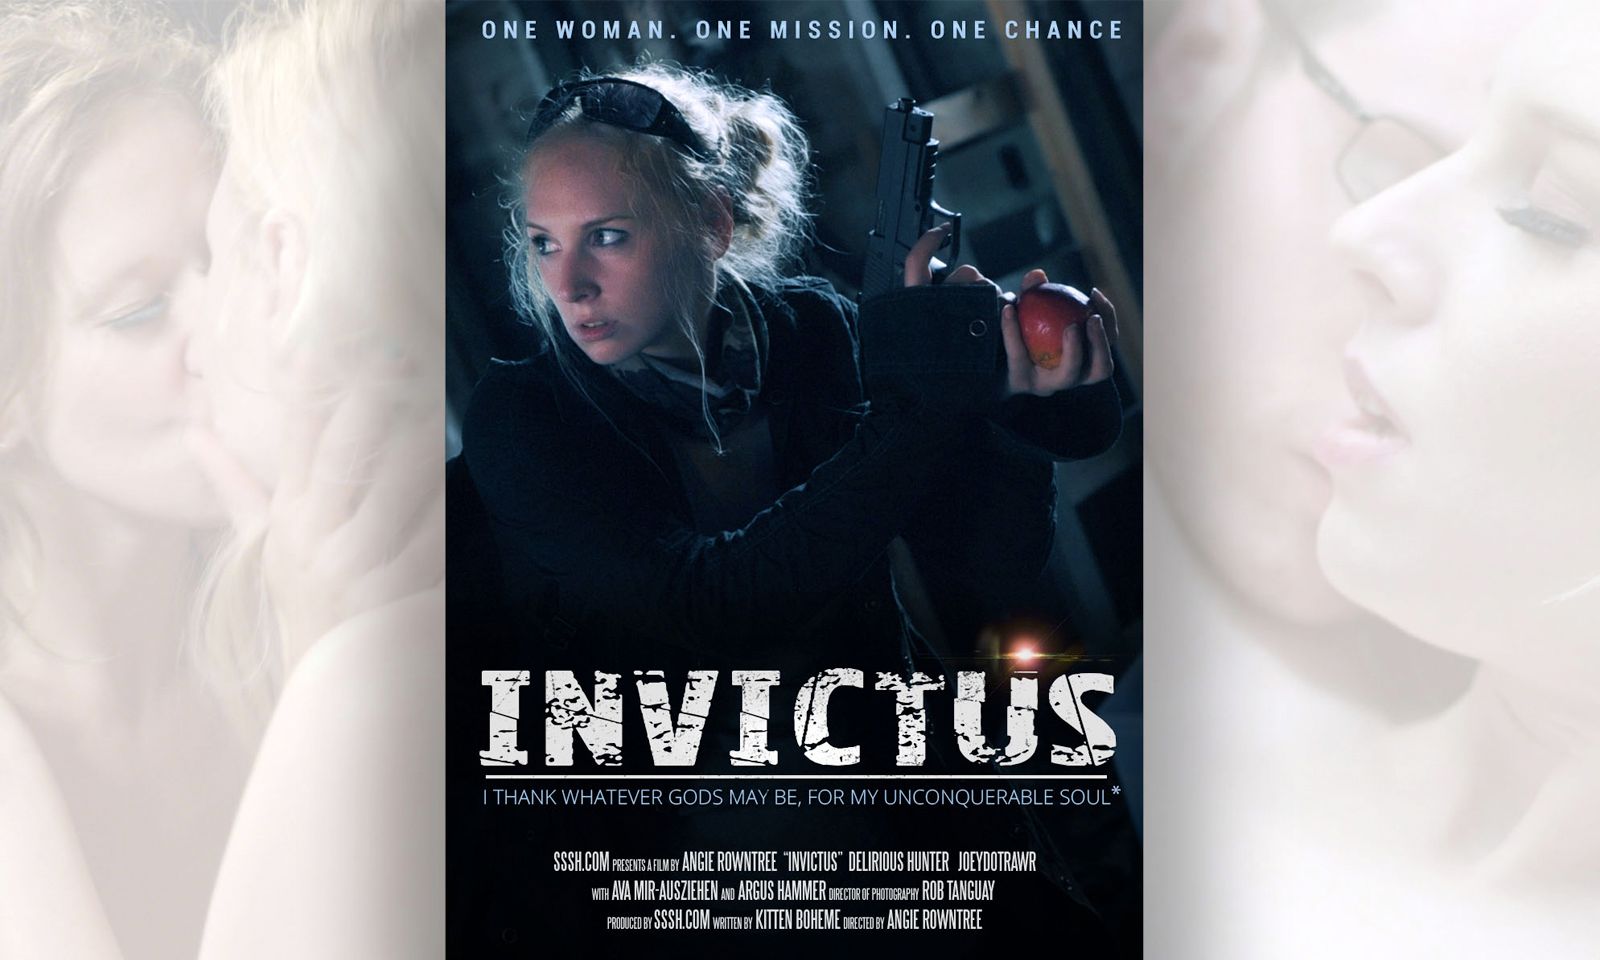 Sssh.com’s ‘Invictus’ Takes Erotic Voyage into Dystopian Future